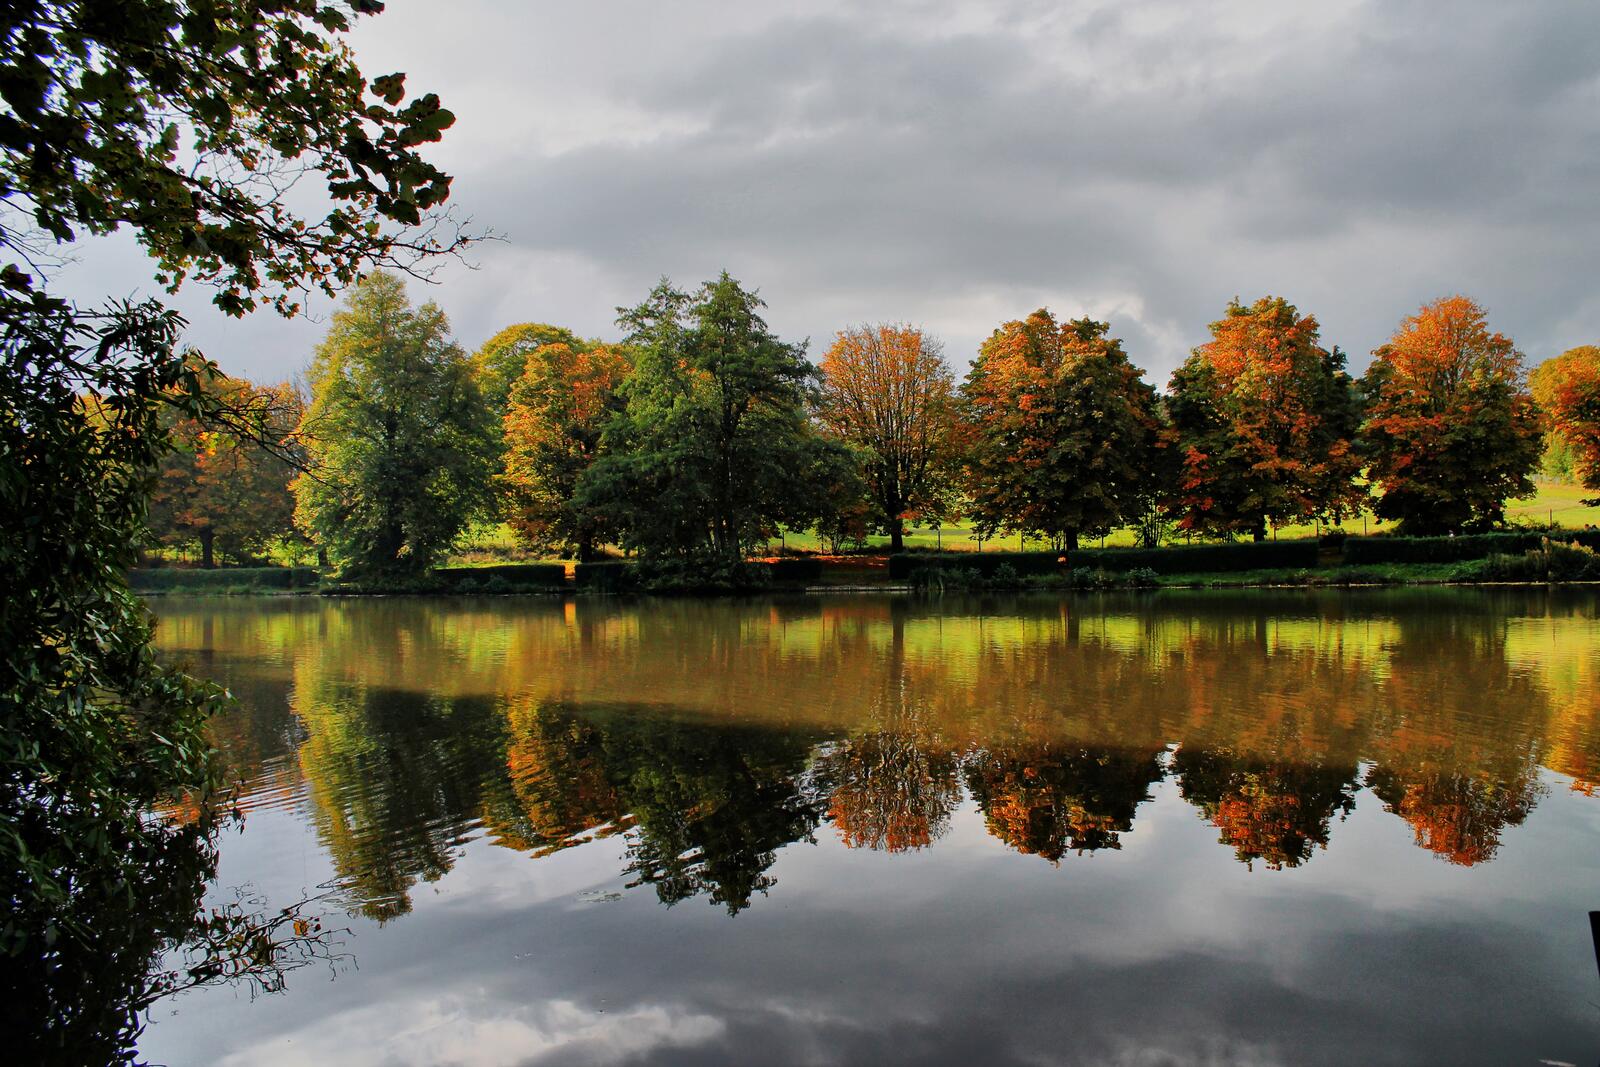 免费照片公园河岸上的落叶秋树